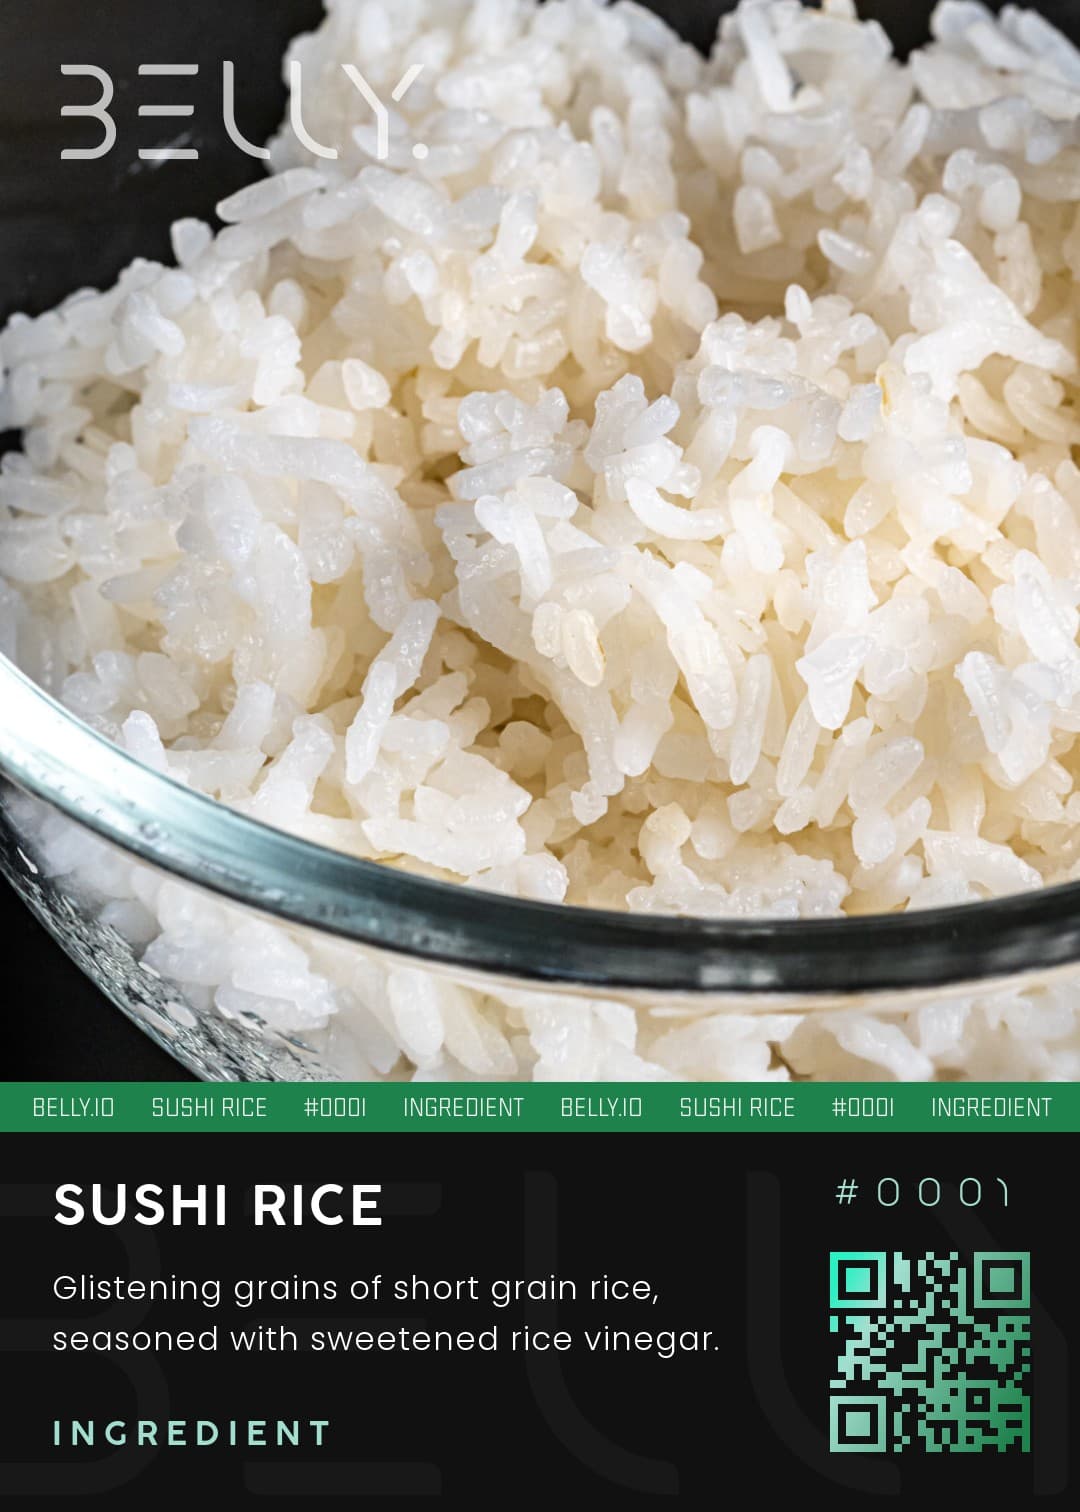 Sushi Rice - Glistening grains of short grain rice, seasoned with sweetened rice vinegar.